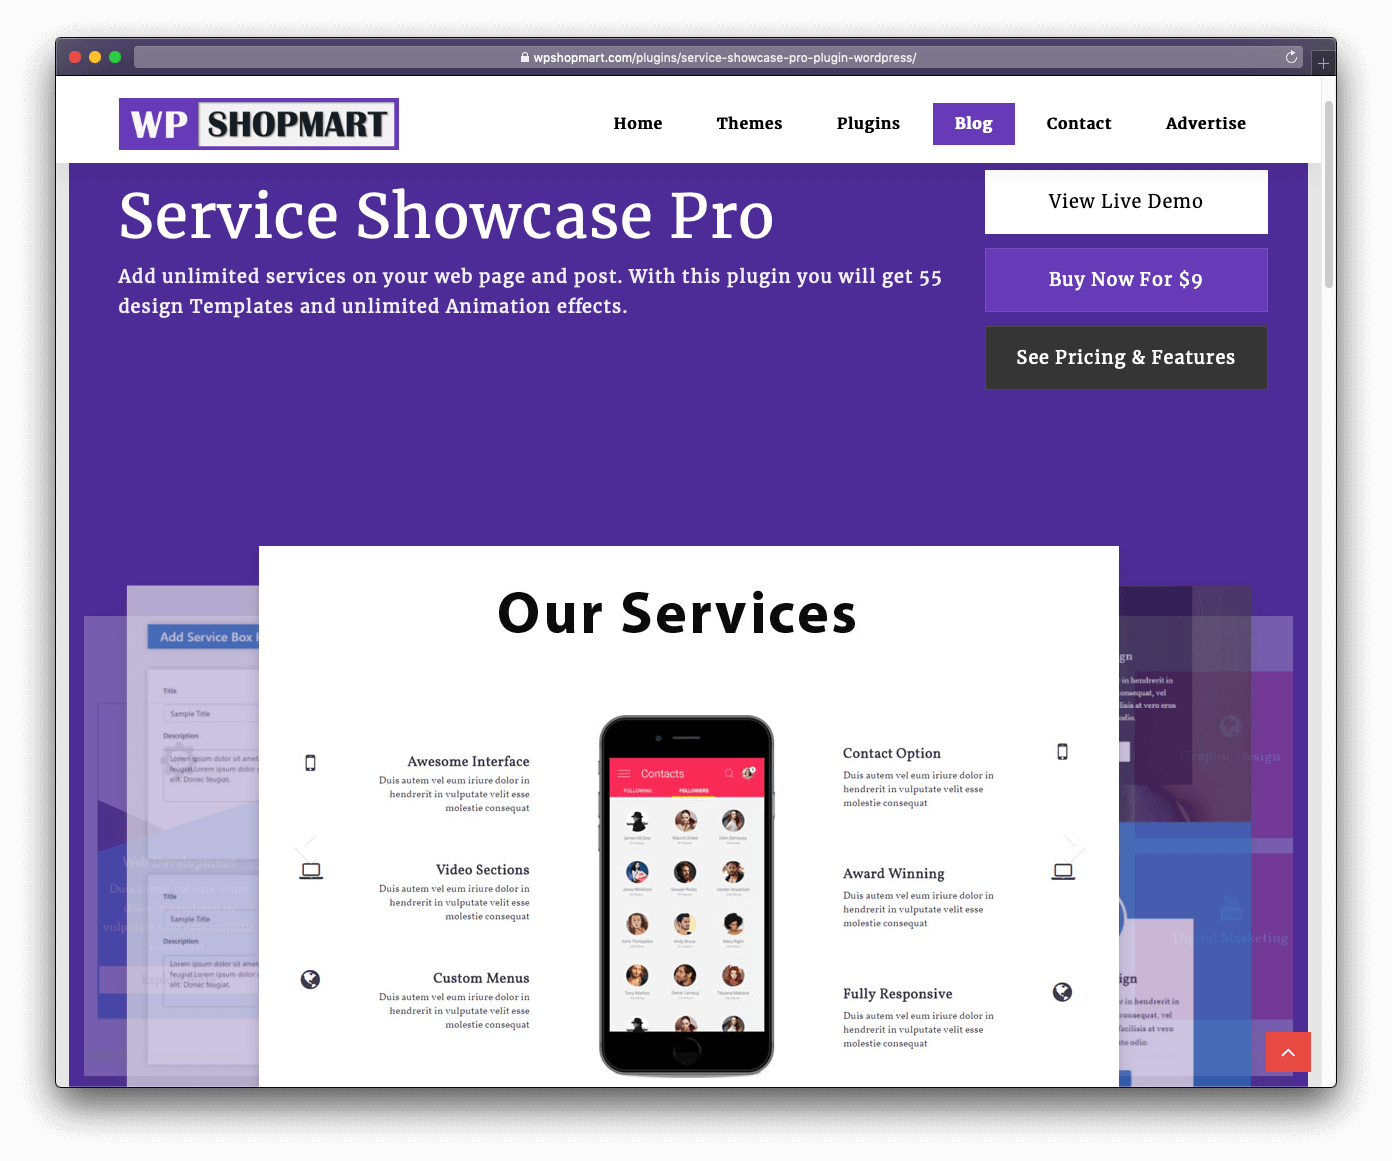 Service Showcase Pro